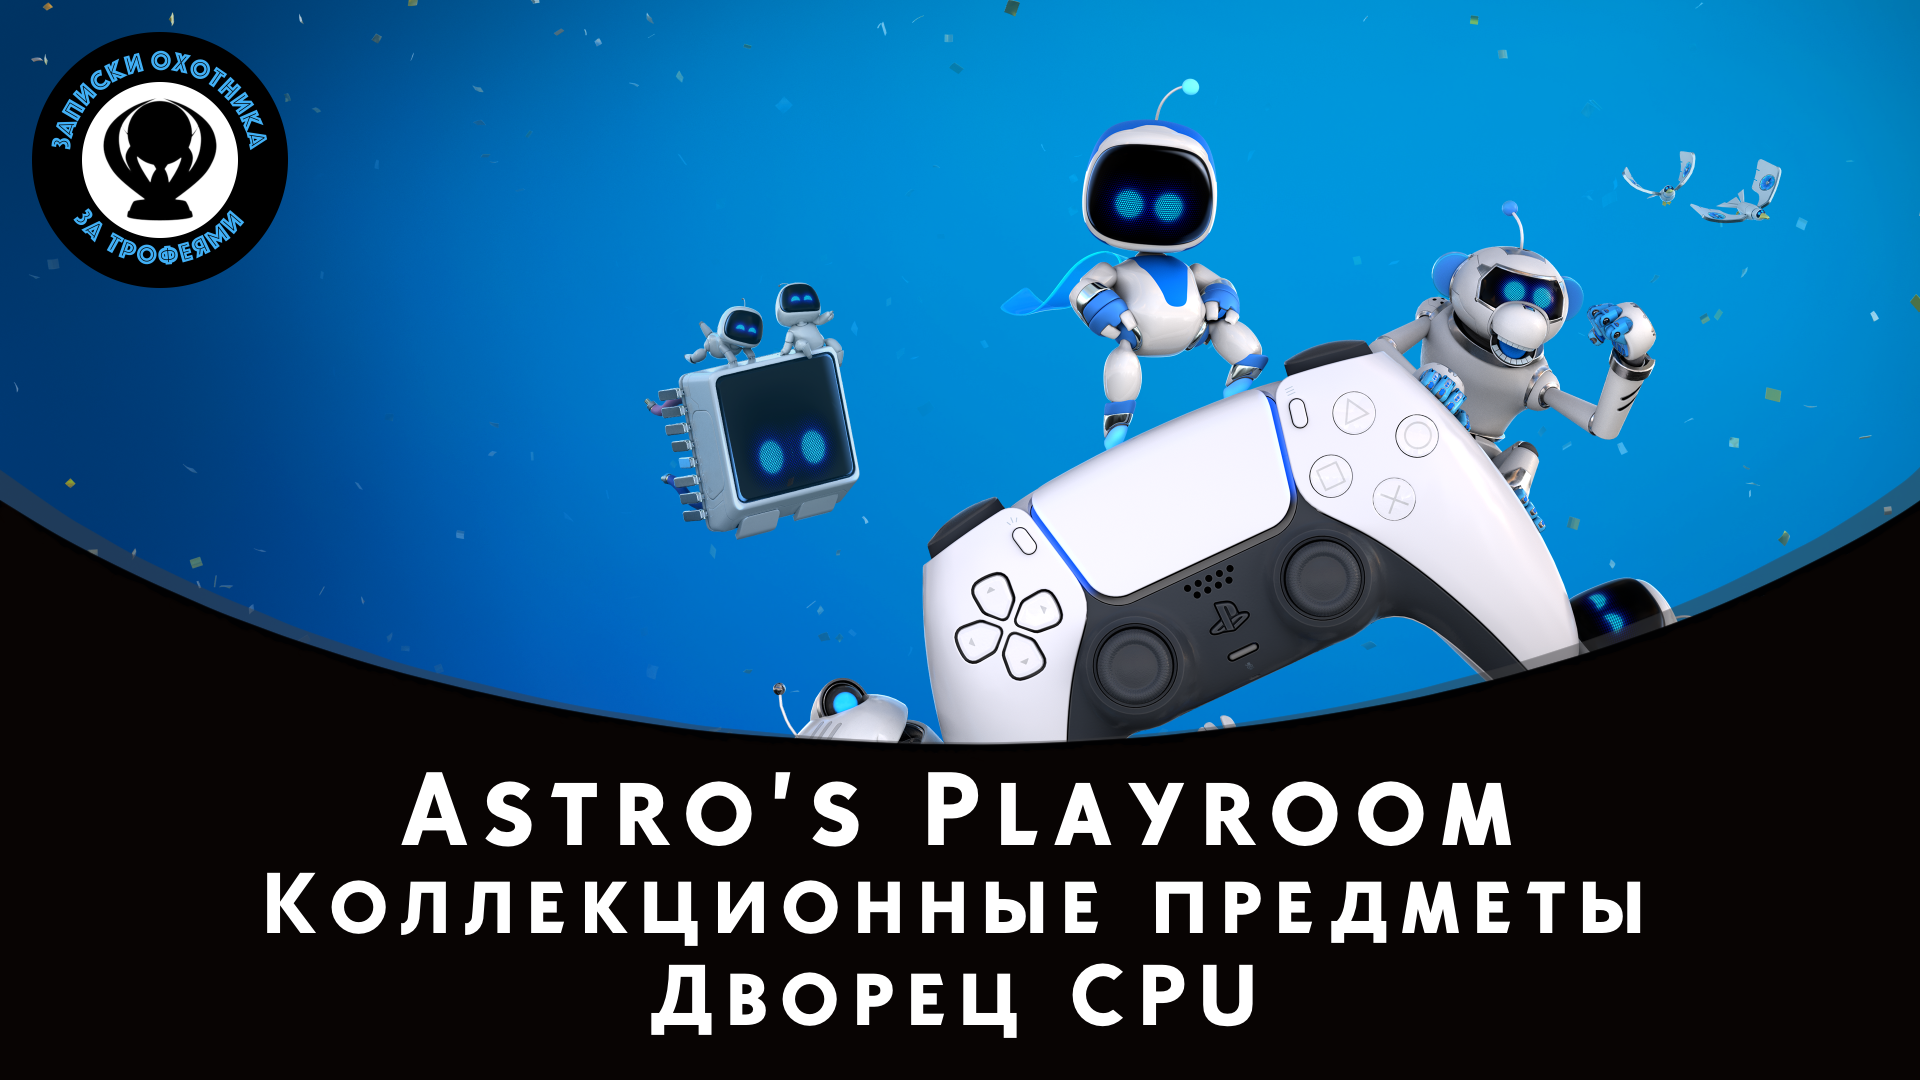 Astro’s Playroom — Все коллекционные предметы "Дворец CPU" (Артефакты и Детали)